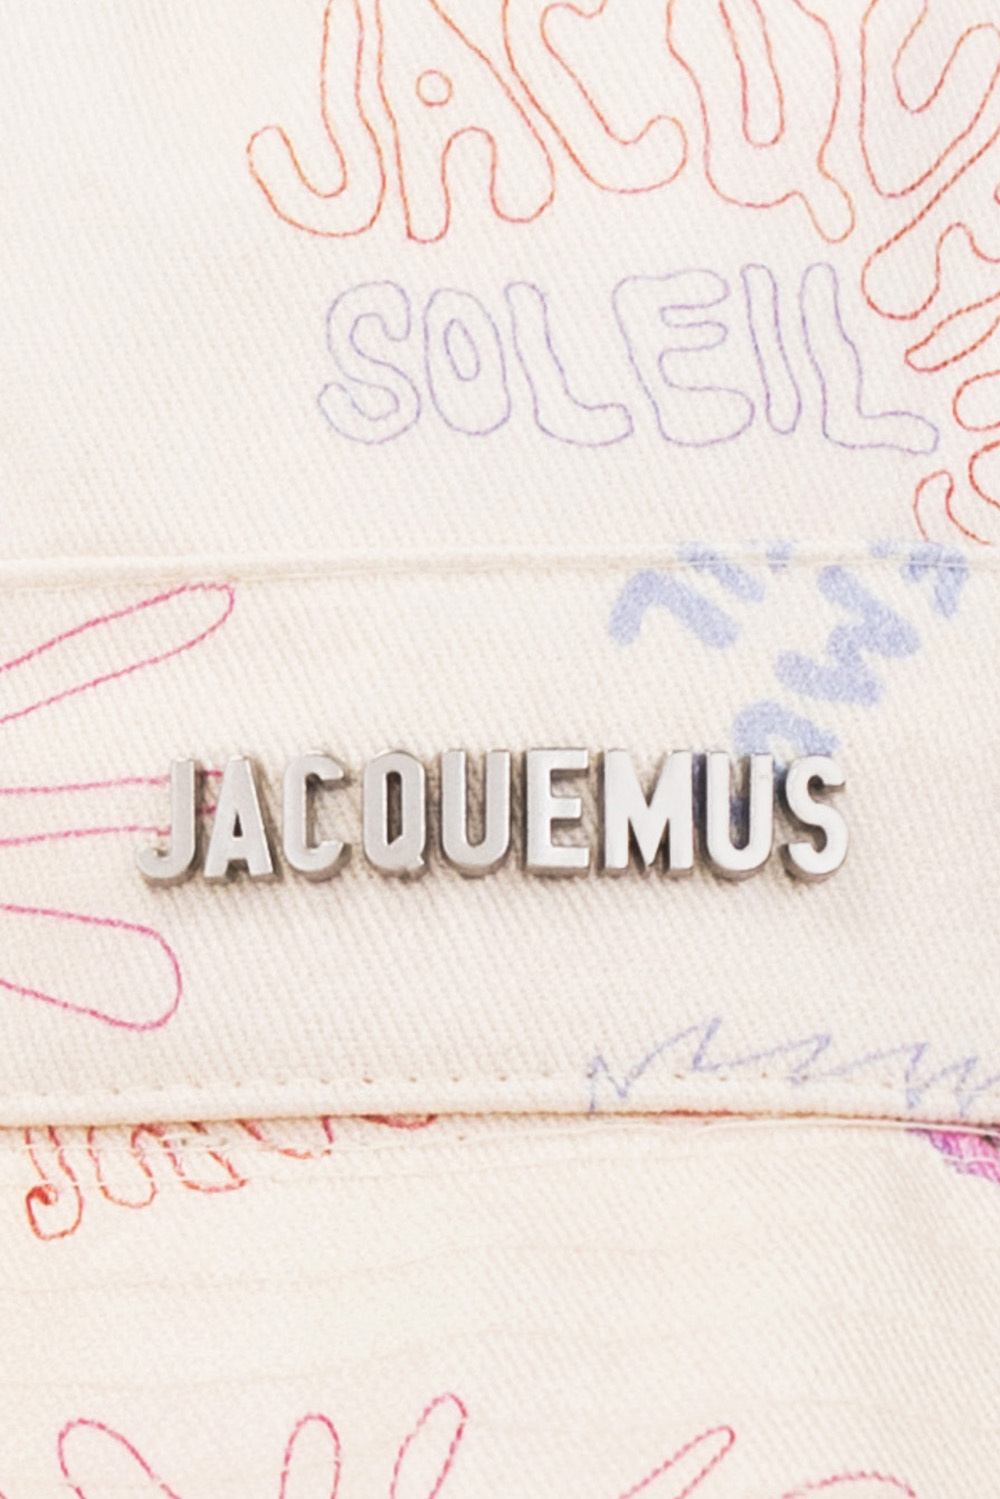 Jacquemus ‘Artichaut’ gloves hat